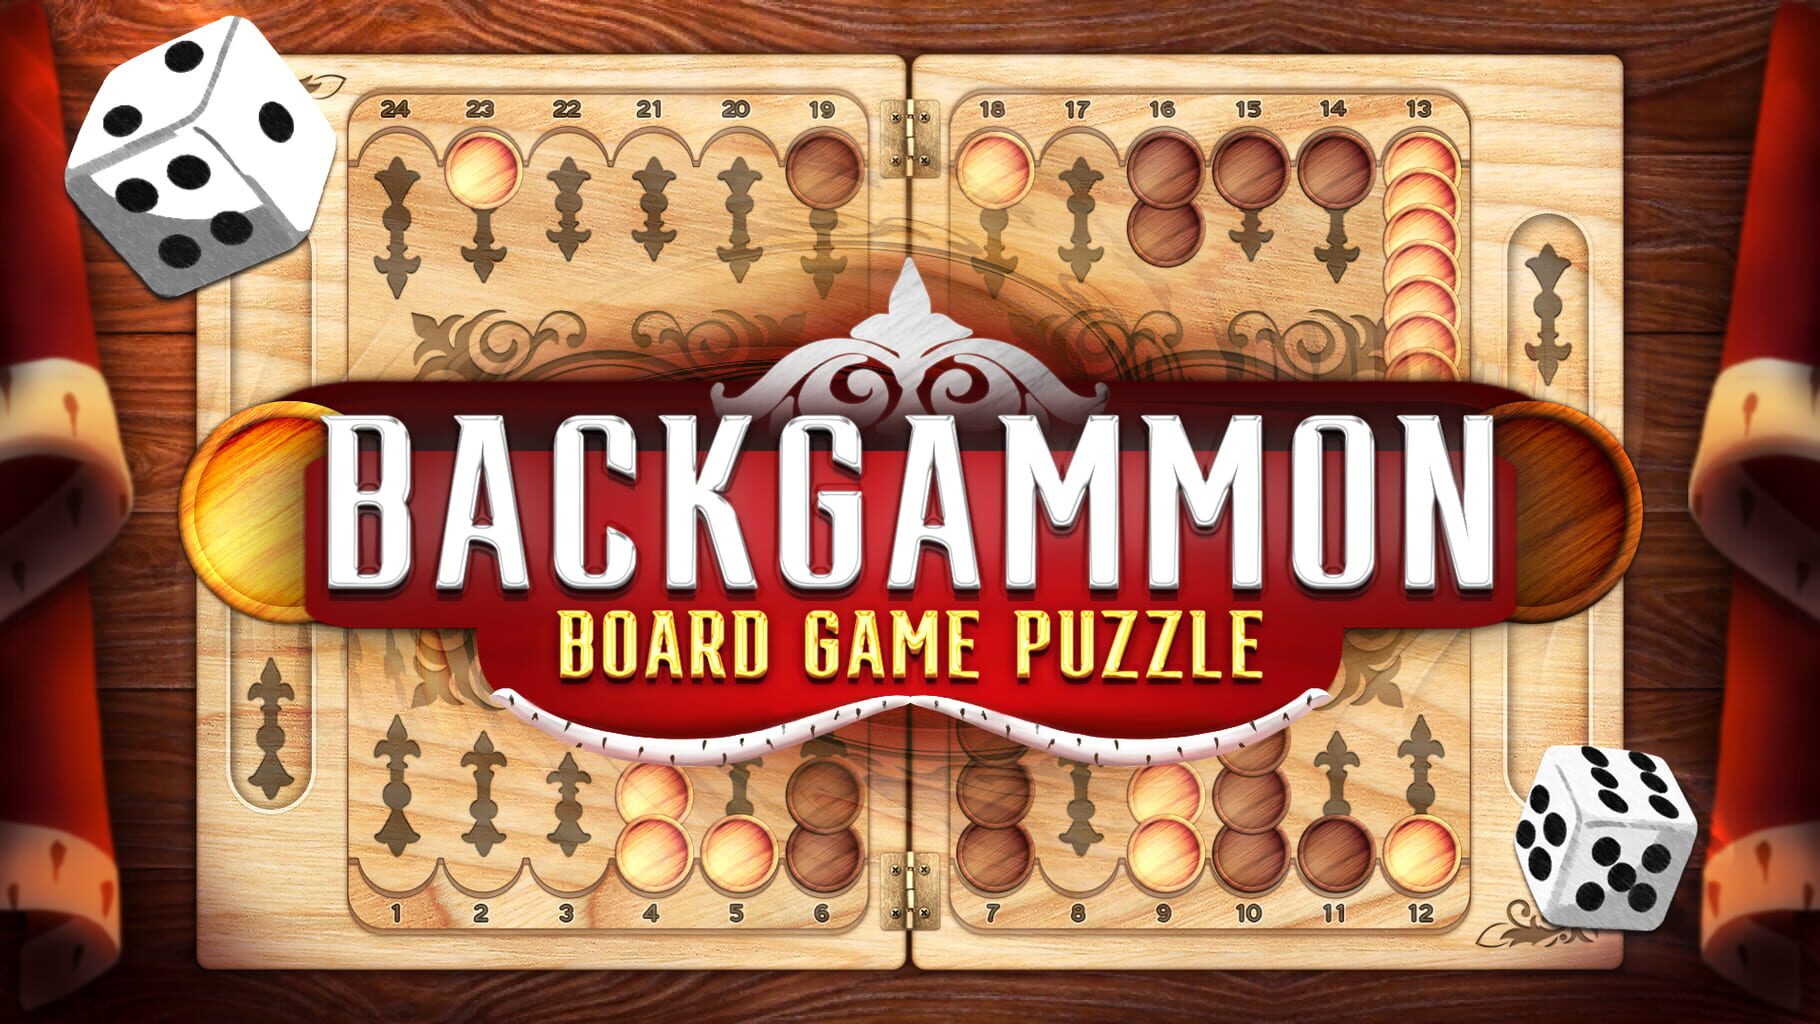 Backgammon: Board Game Puzzle artwork